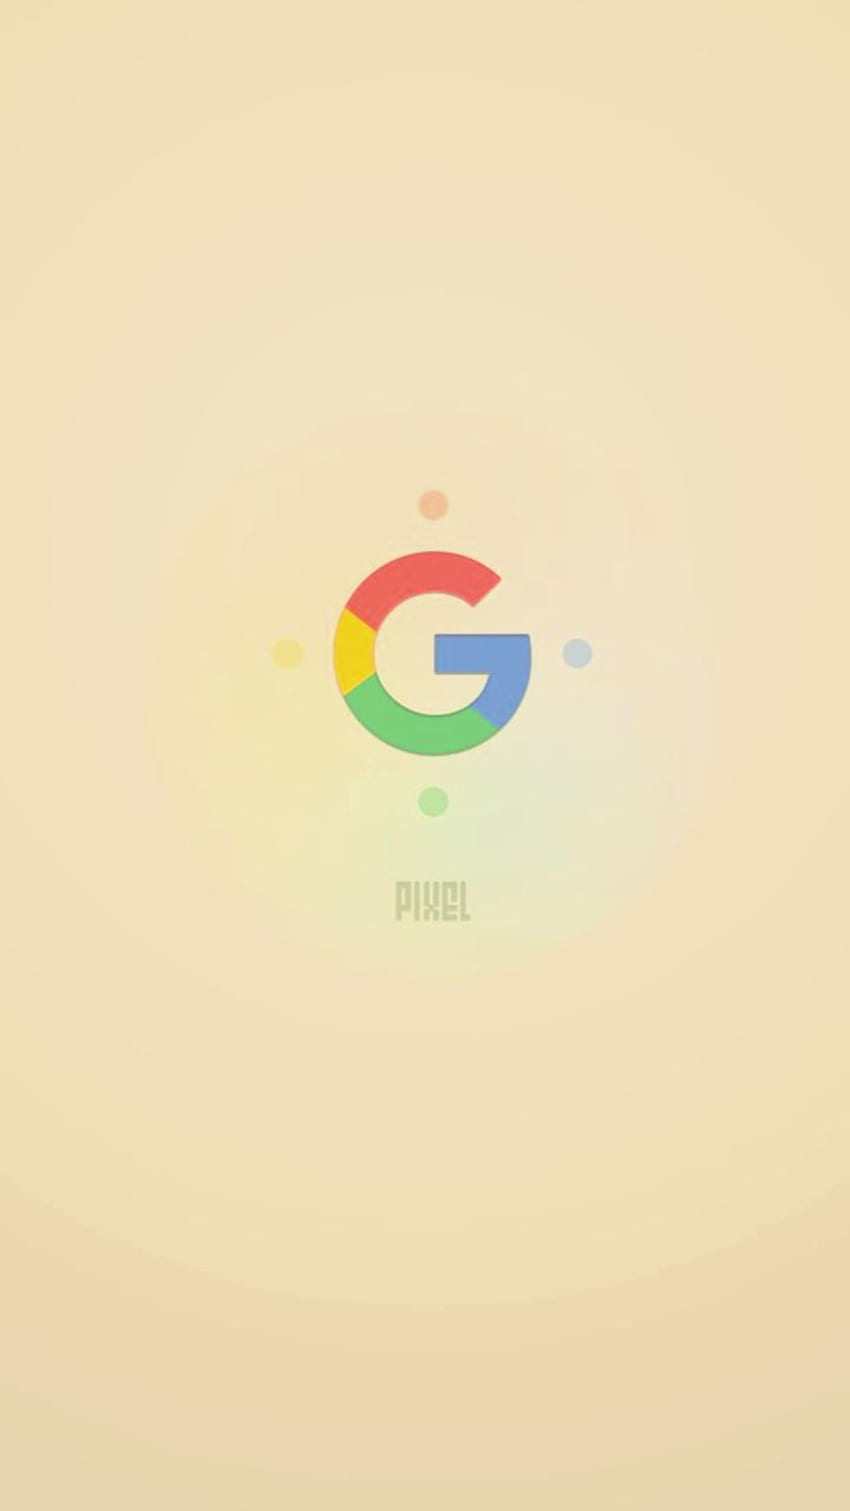 Google Pixel - Bạn muốn tìm một chiếc điện thoại thông minh đẹp và hiệu năng mạnh mẽ? Google Pixel là lựa chọn hoàn hảo cho bạn với thiết kế đẹp mắt và camera ấn tượng. Hãy xem hình ảnh liên quan để khám phá thêm nhiều tính năng độc đáo của Google Pixel.